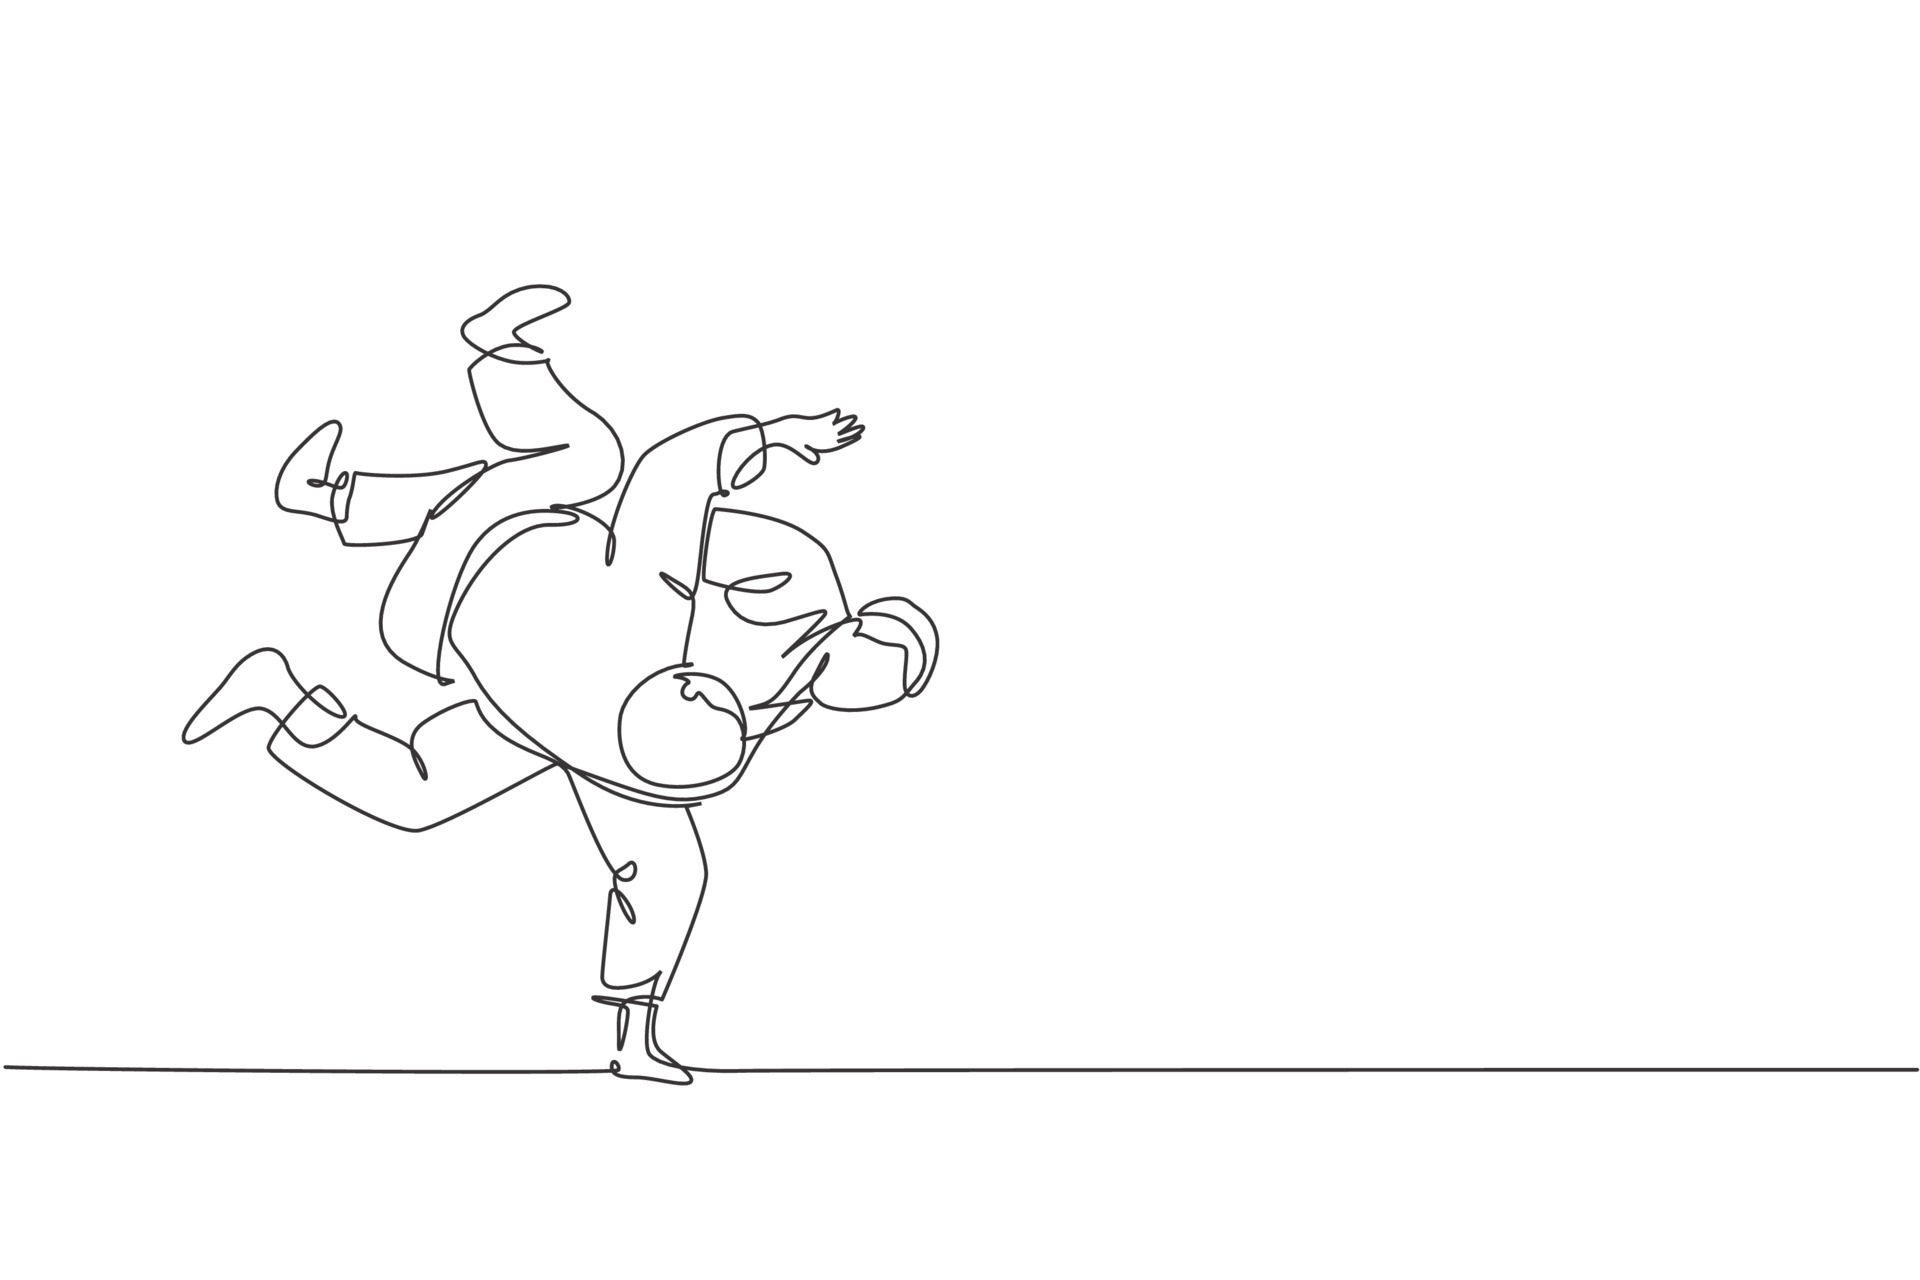 een doorlopende lijntekening van twee jonge sportieve mannen die judotechniek trainen in de sporthal. jiu jitsu strijd strijd concurrentie concept. dynamische enkele lijn tekenen ontwerp vector illustratie afbeelding Download